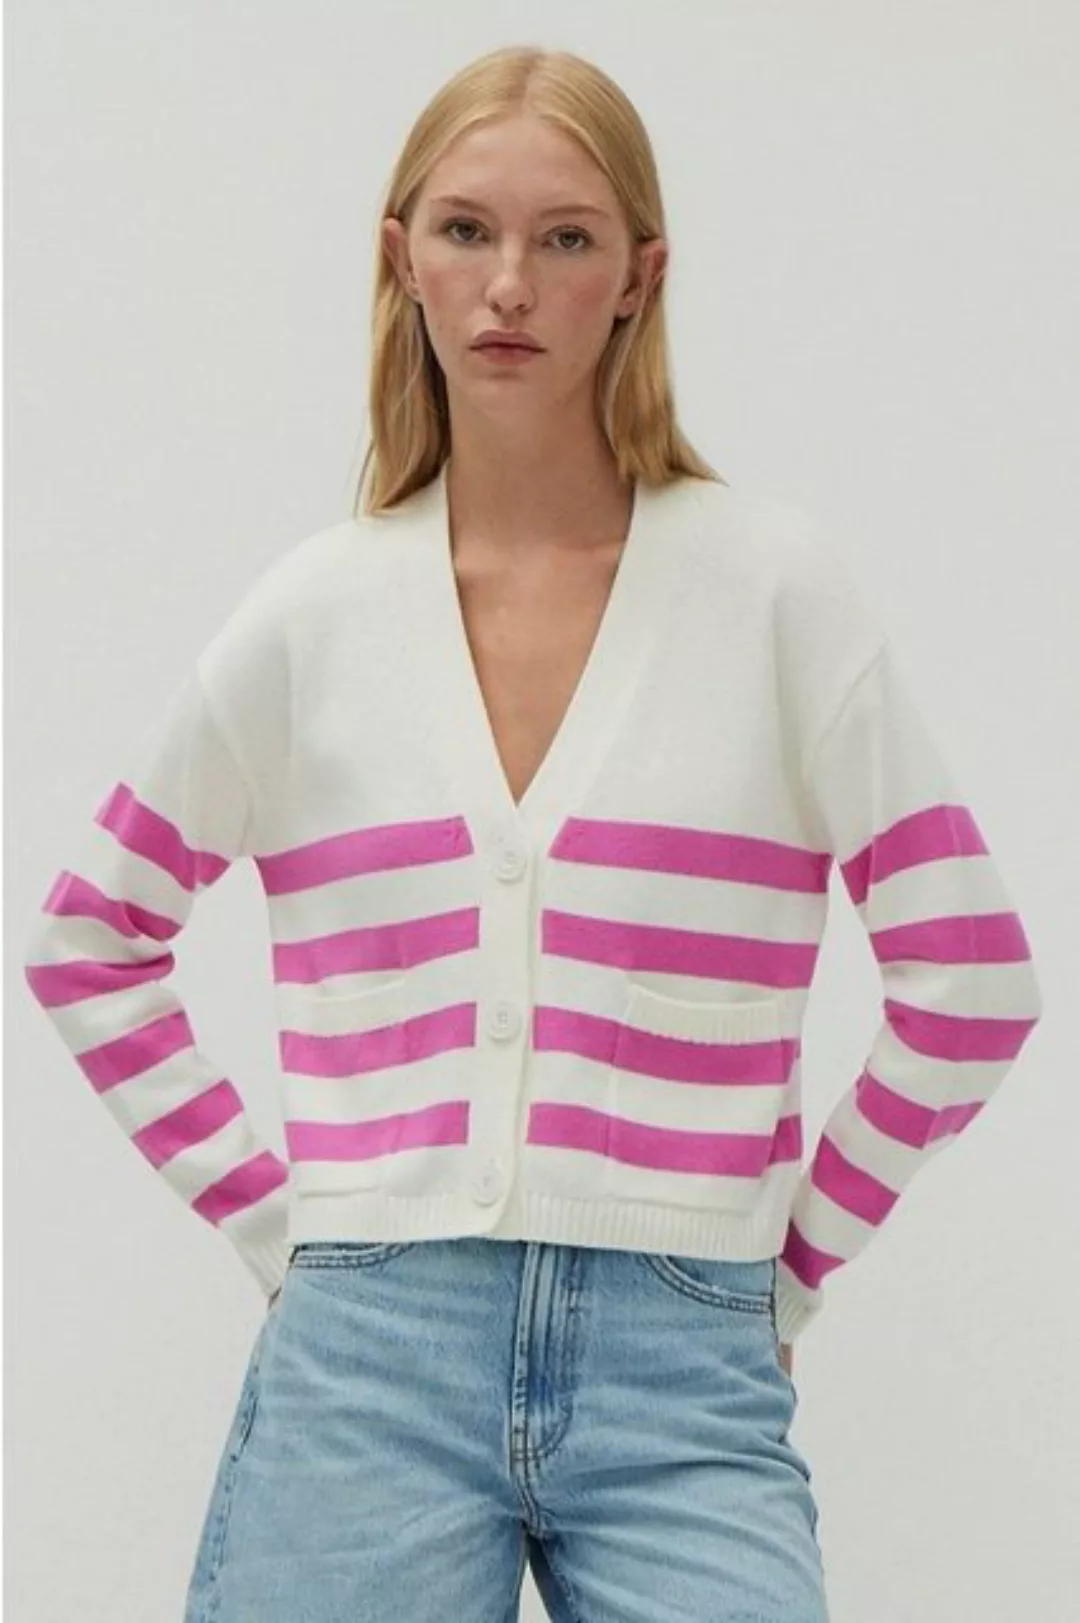 THE FASHION PEOPLE Kurzweste striped cardigan knitted günstig online kaufen